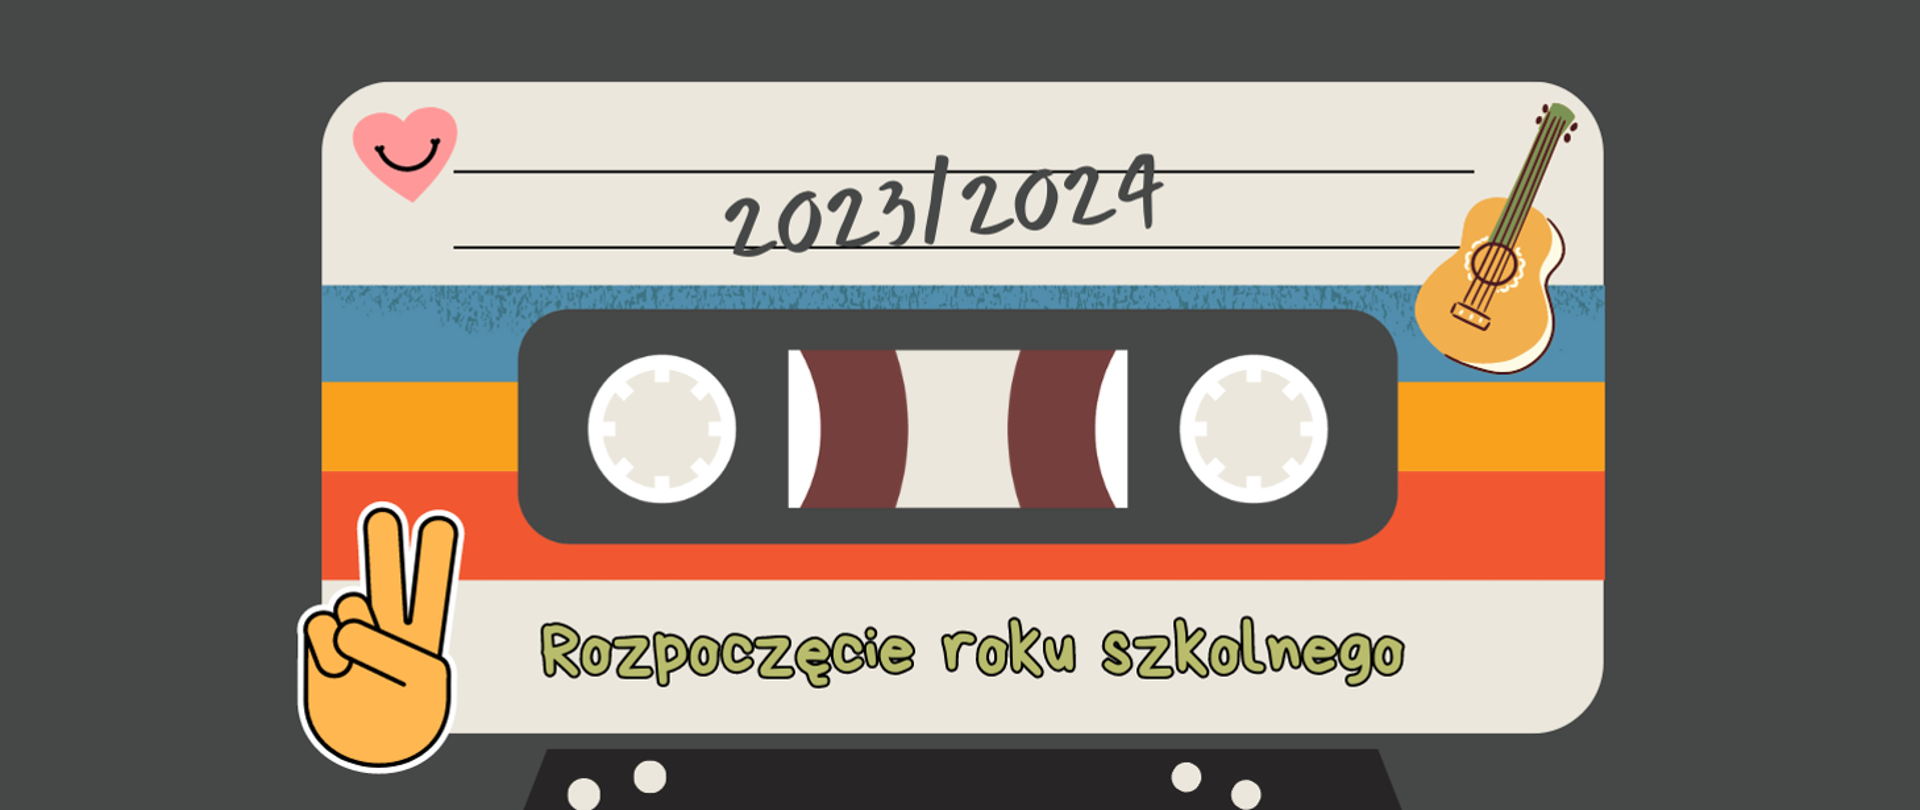 grafika przedstawiająca kasetę magnetofonową z napisami 2023/2024 oraz Rozpoczęcie roku szkolnego. W lewym górnym rogu serduszko różowe, w prawym – gitara, w lewym dolnym – ikona dłoni z gestem V